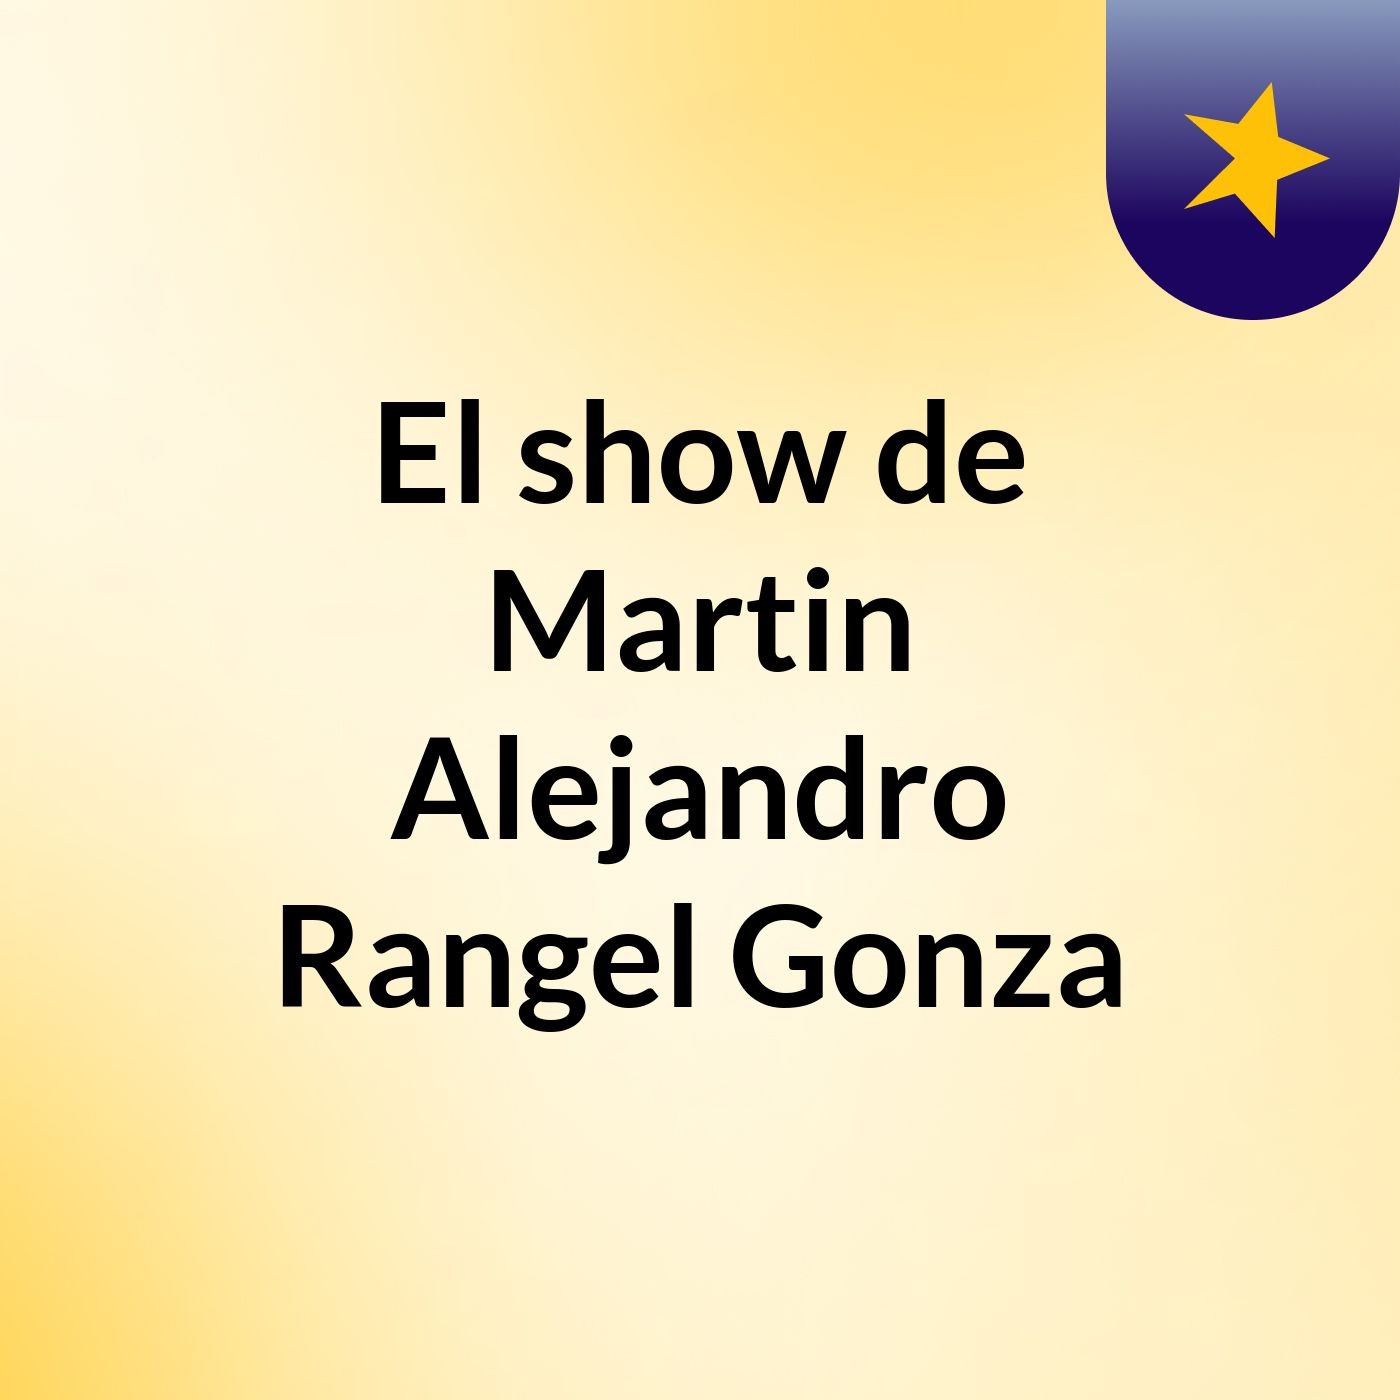 El show de Martin Alejandro Rangel Gonza